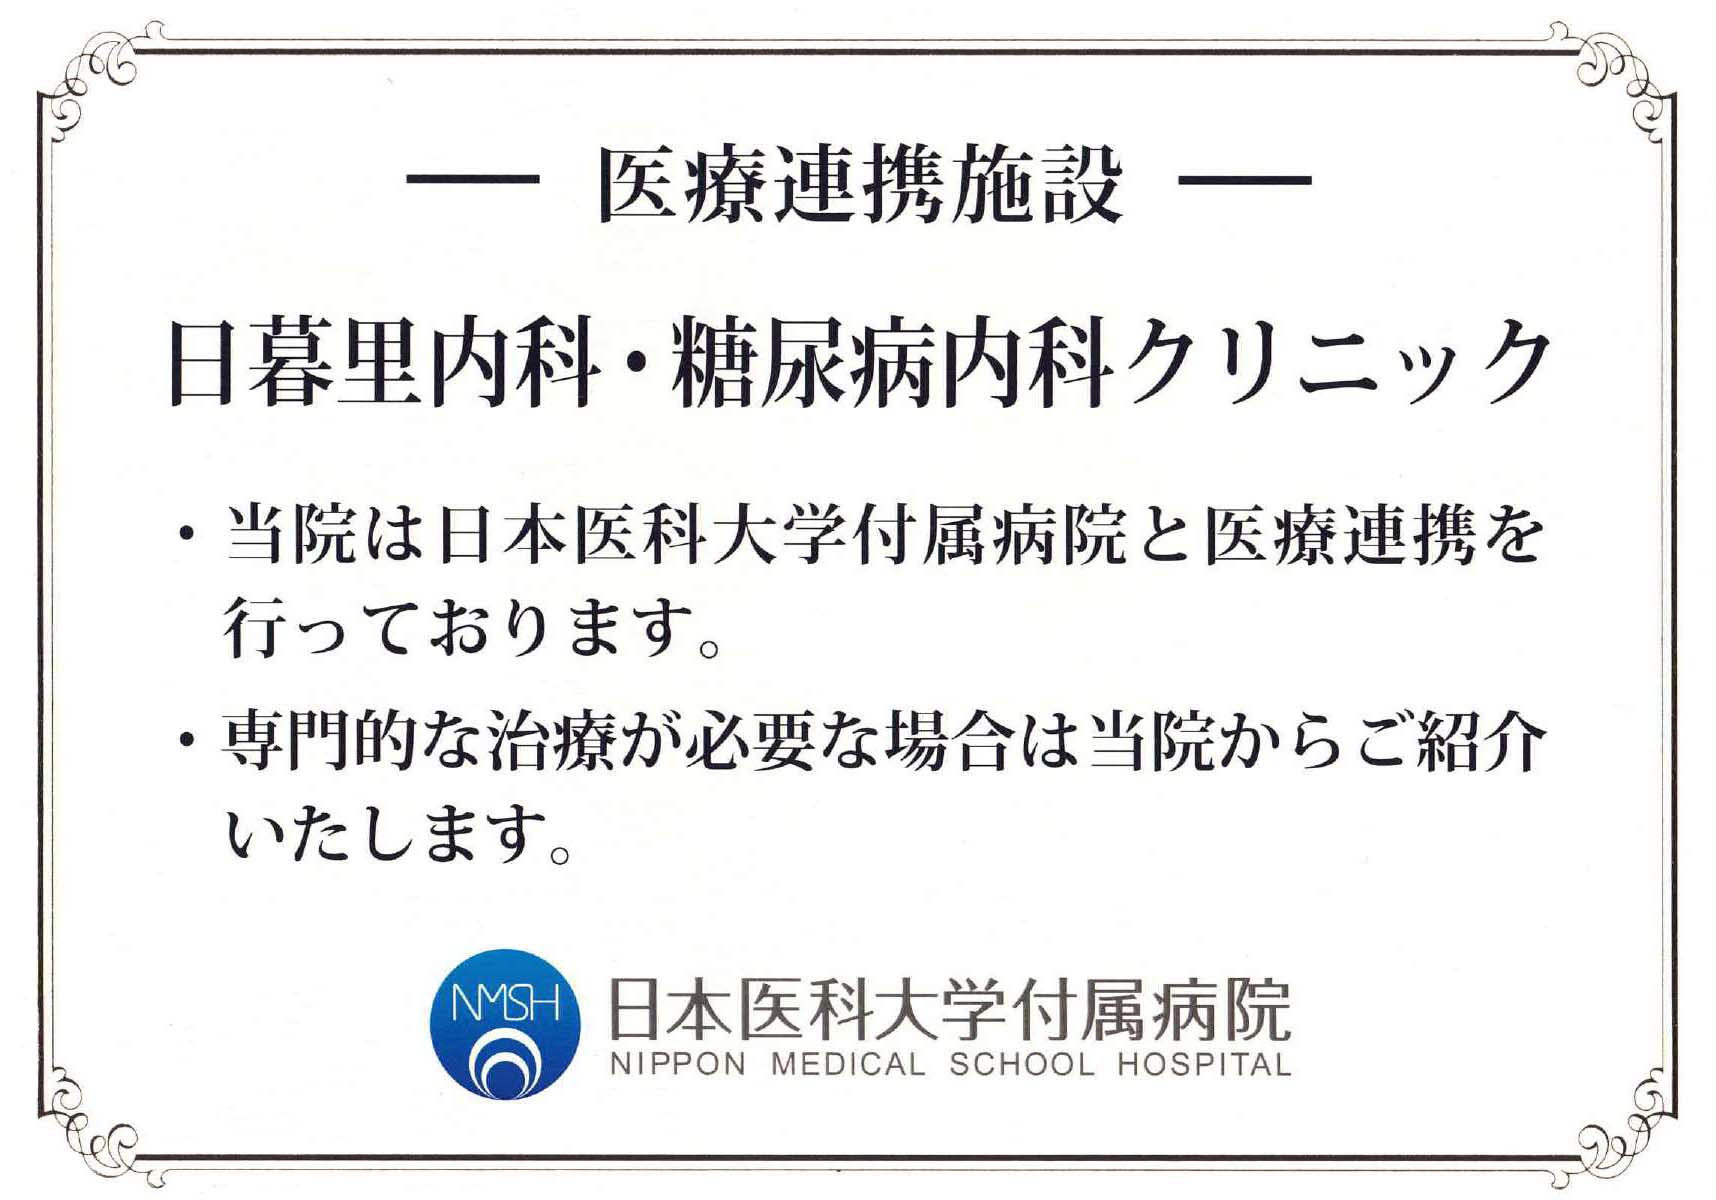 日本医科大学付属病院と医療連携